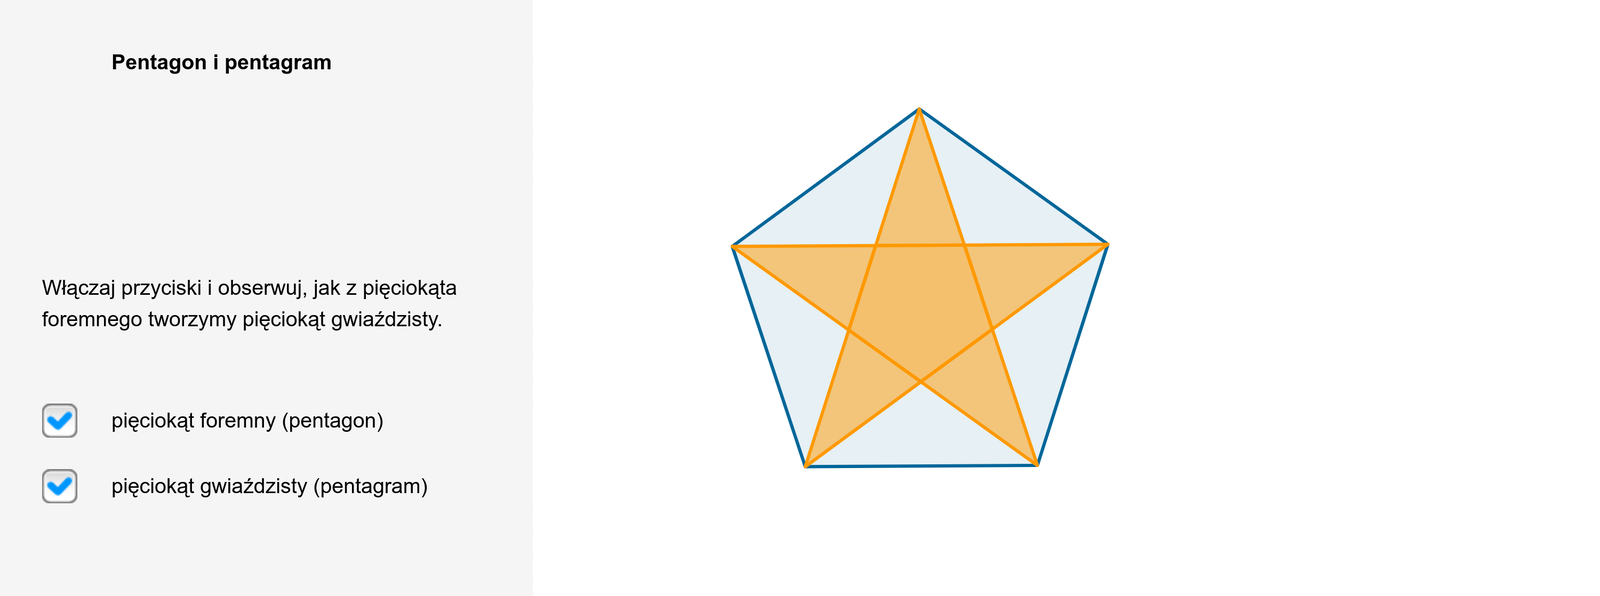 Aplet ilustruje jak z pięciokąta foremnego (pentagon) tworzy się pięciokąt gwiaździsty (pentagram). Pięciokąt gwiaździsty powstaje poprzez wyrysowanie przekątnych pięciokąta foremnego. Następnie należy połączyć odcinkami pierwszy wierzchołek pięciokąta z trzecim, potem trzeci z piątym, piąty z drugim, drugi z czwartym i czwarty z pierwszym.